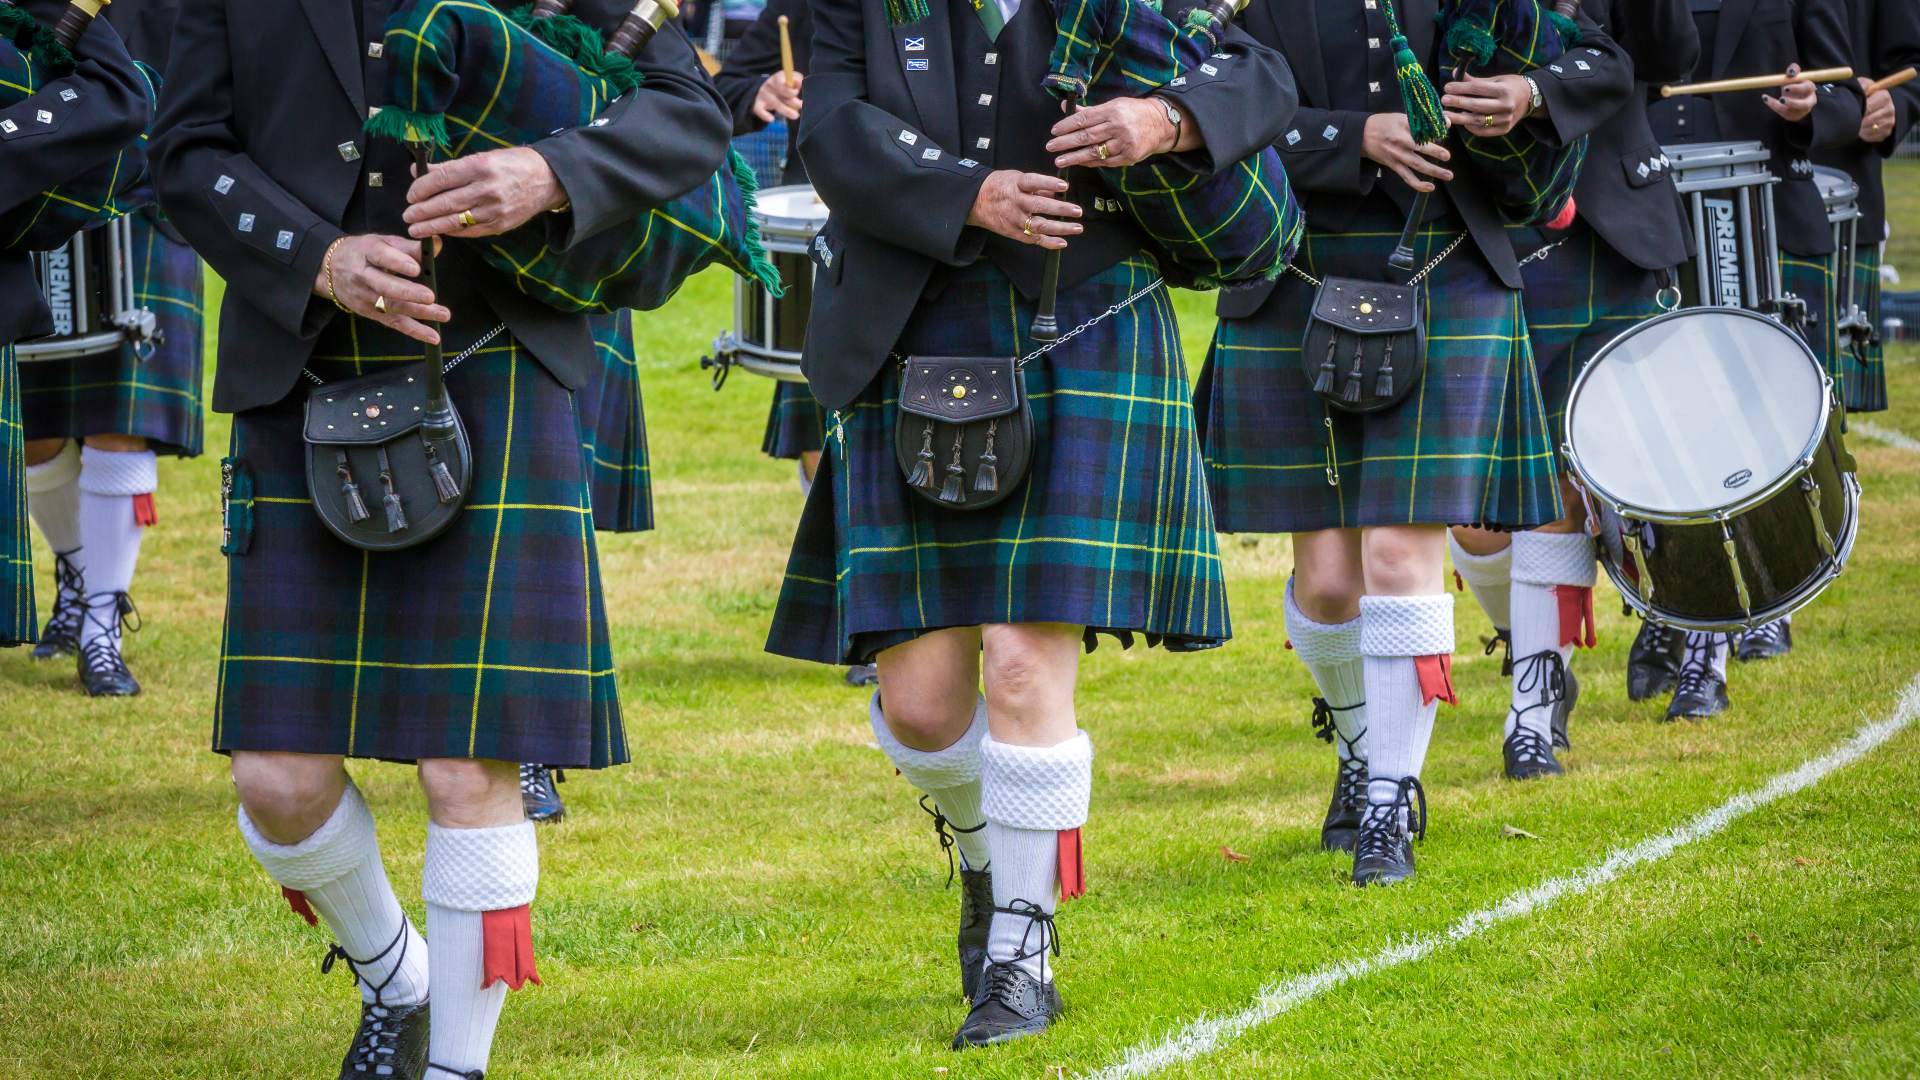 bag pipes and kilts at the highland games scotland